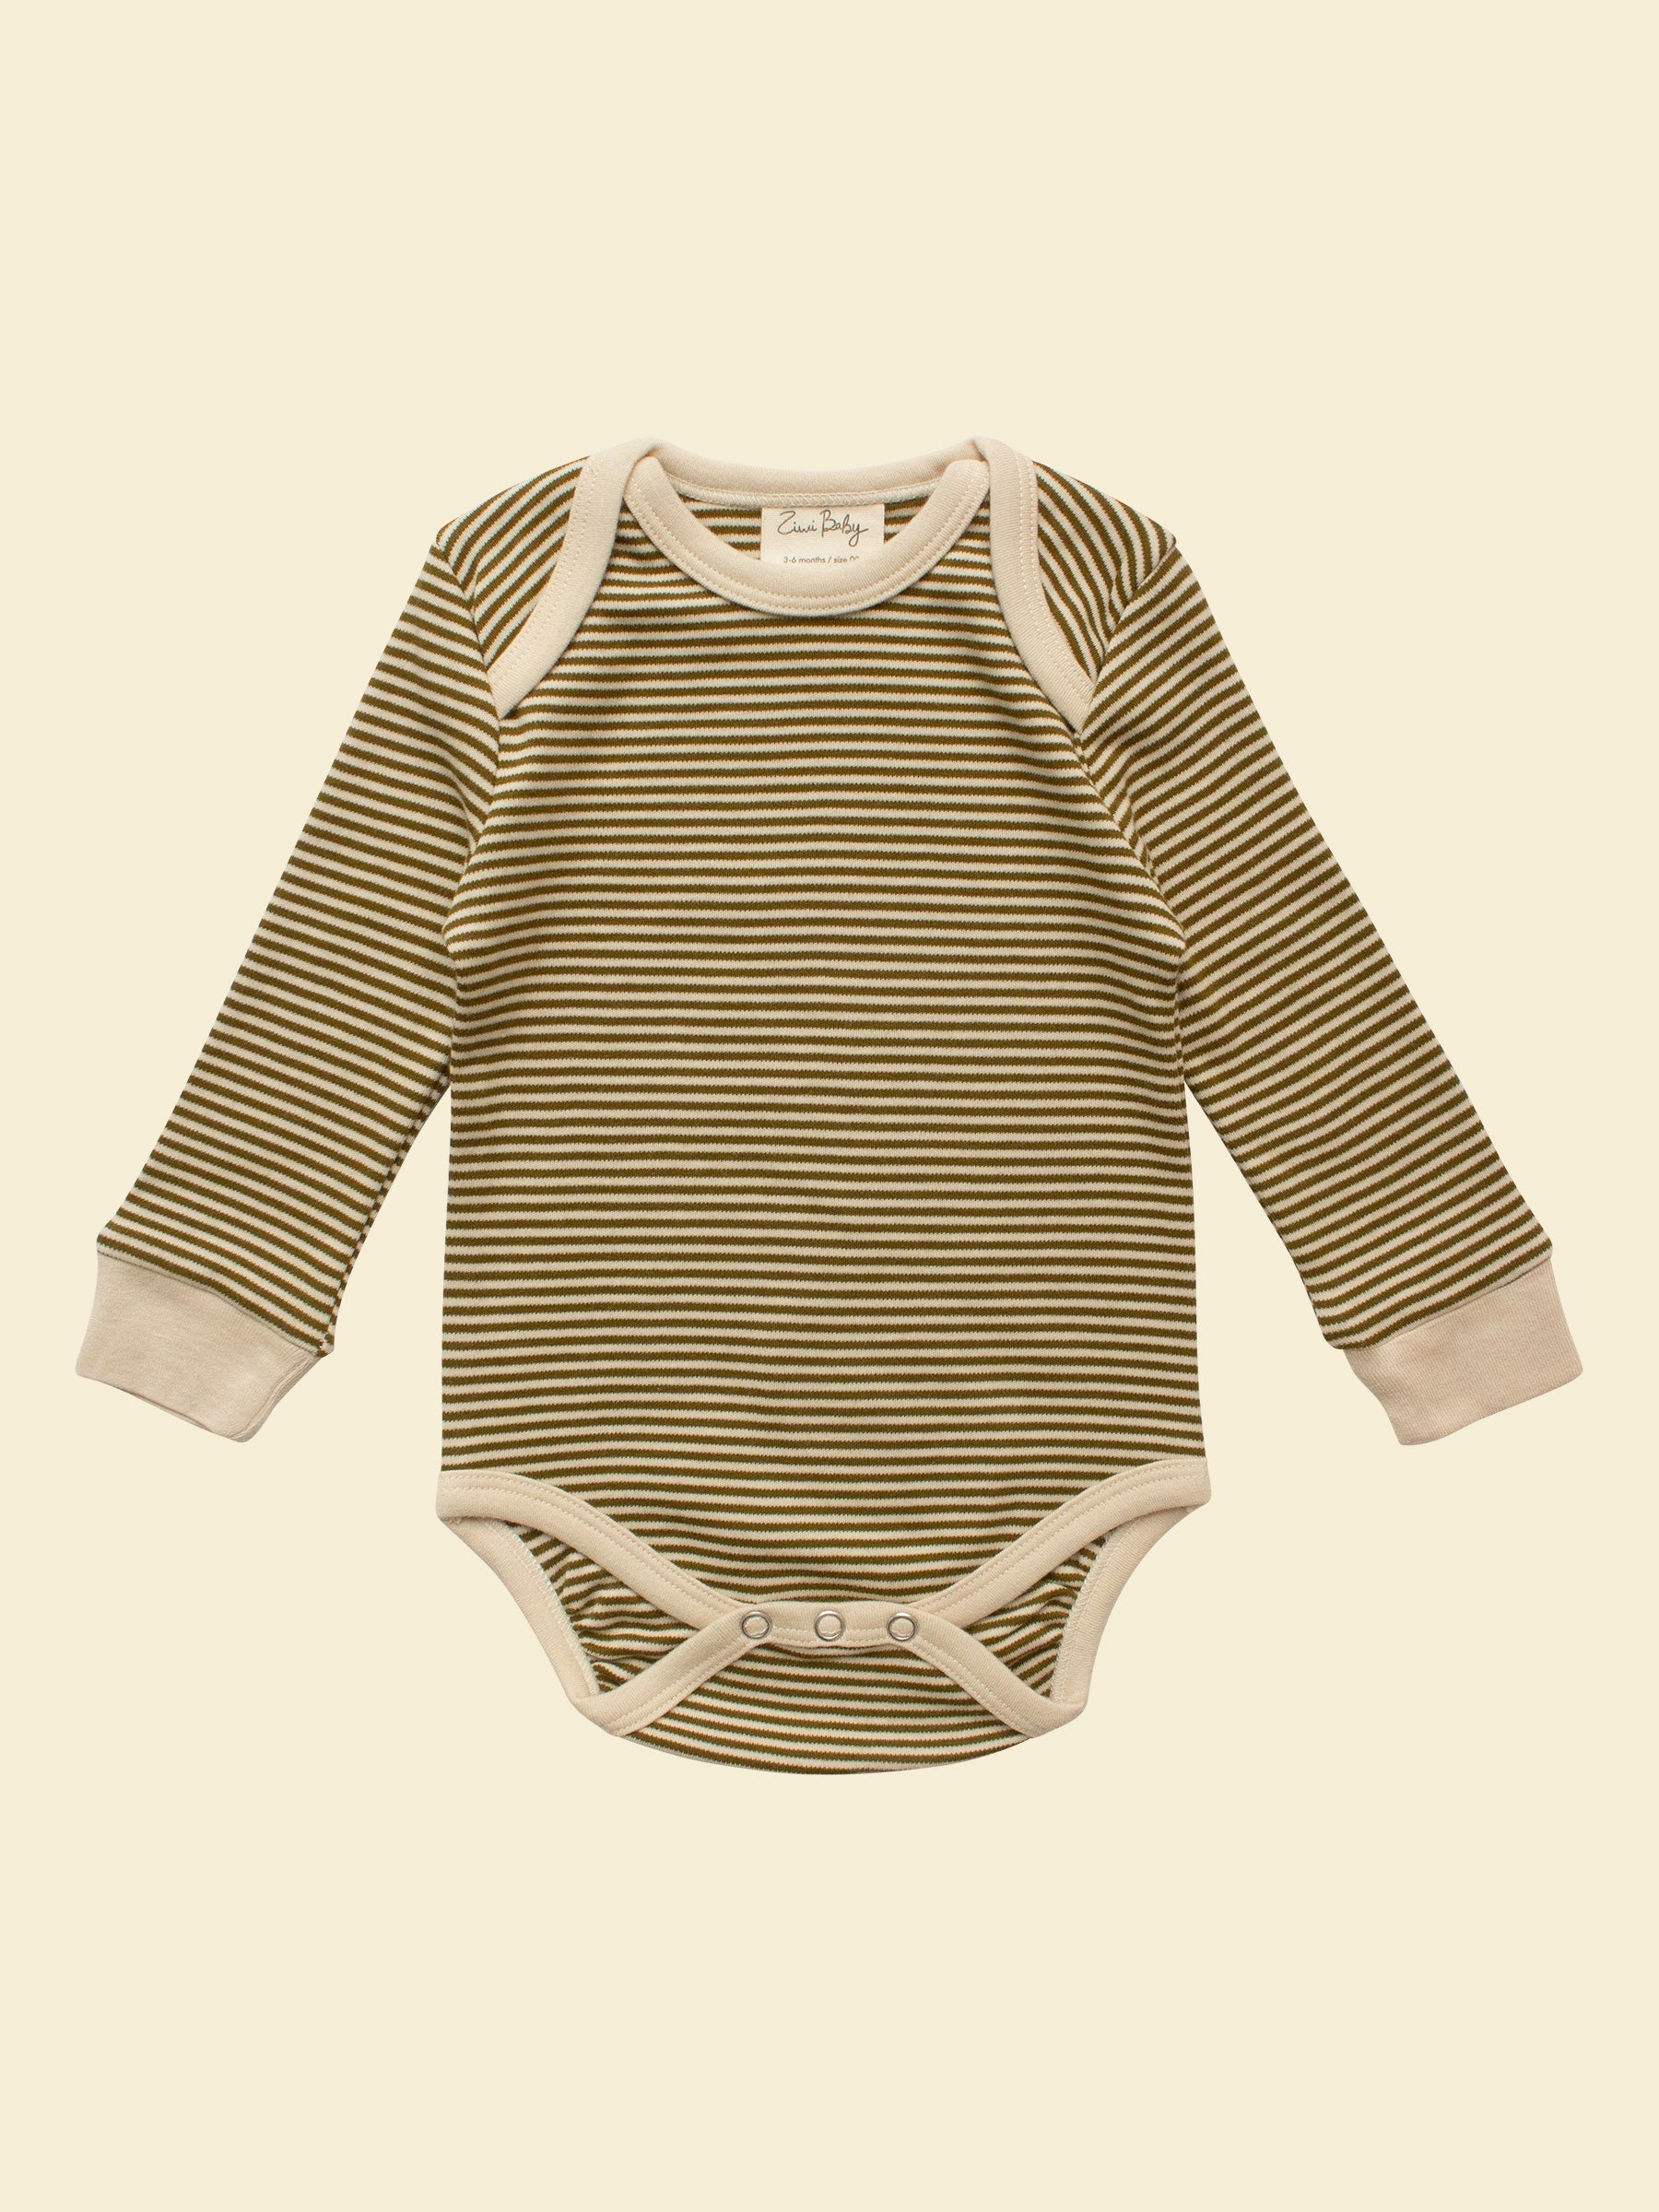 Gender Neutral Infant Bodysuit - Olive Stripe